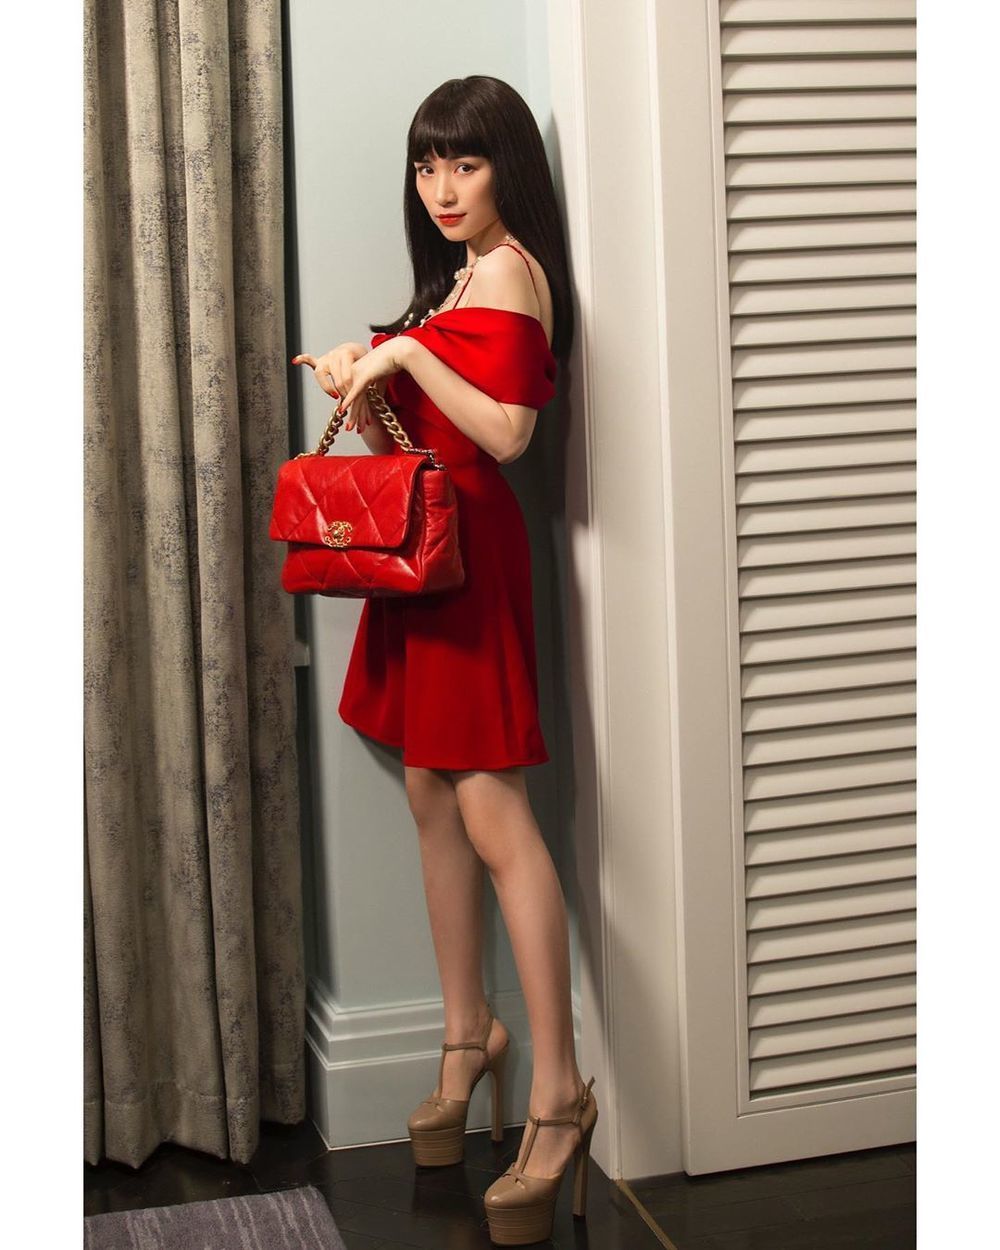  
Đôi giày cao lênh khênh của Hòa Minzy khiến fan vừa sợ vừa thán phục bởi cô nàng có thể tự tin tạo dáng trên item "khủng" này. (Ảnh: Instagram hoaminzy_rose)